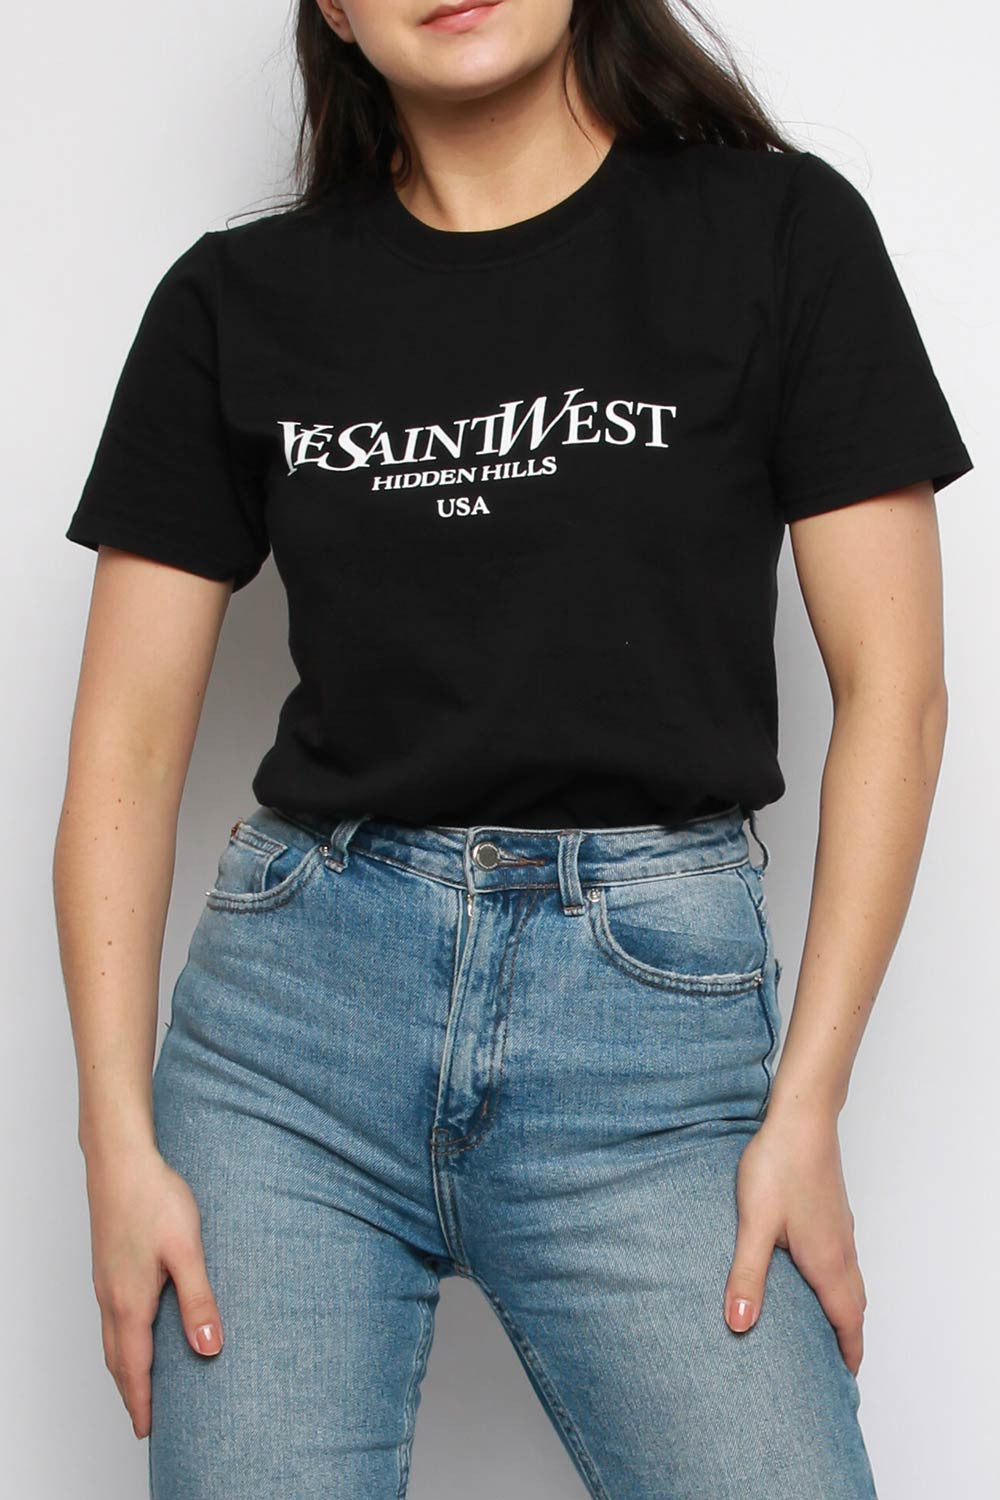 West Shirt - mystylemode.de